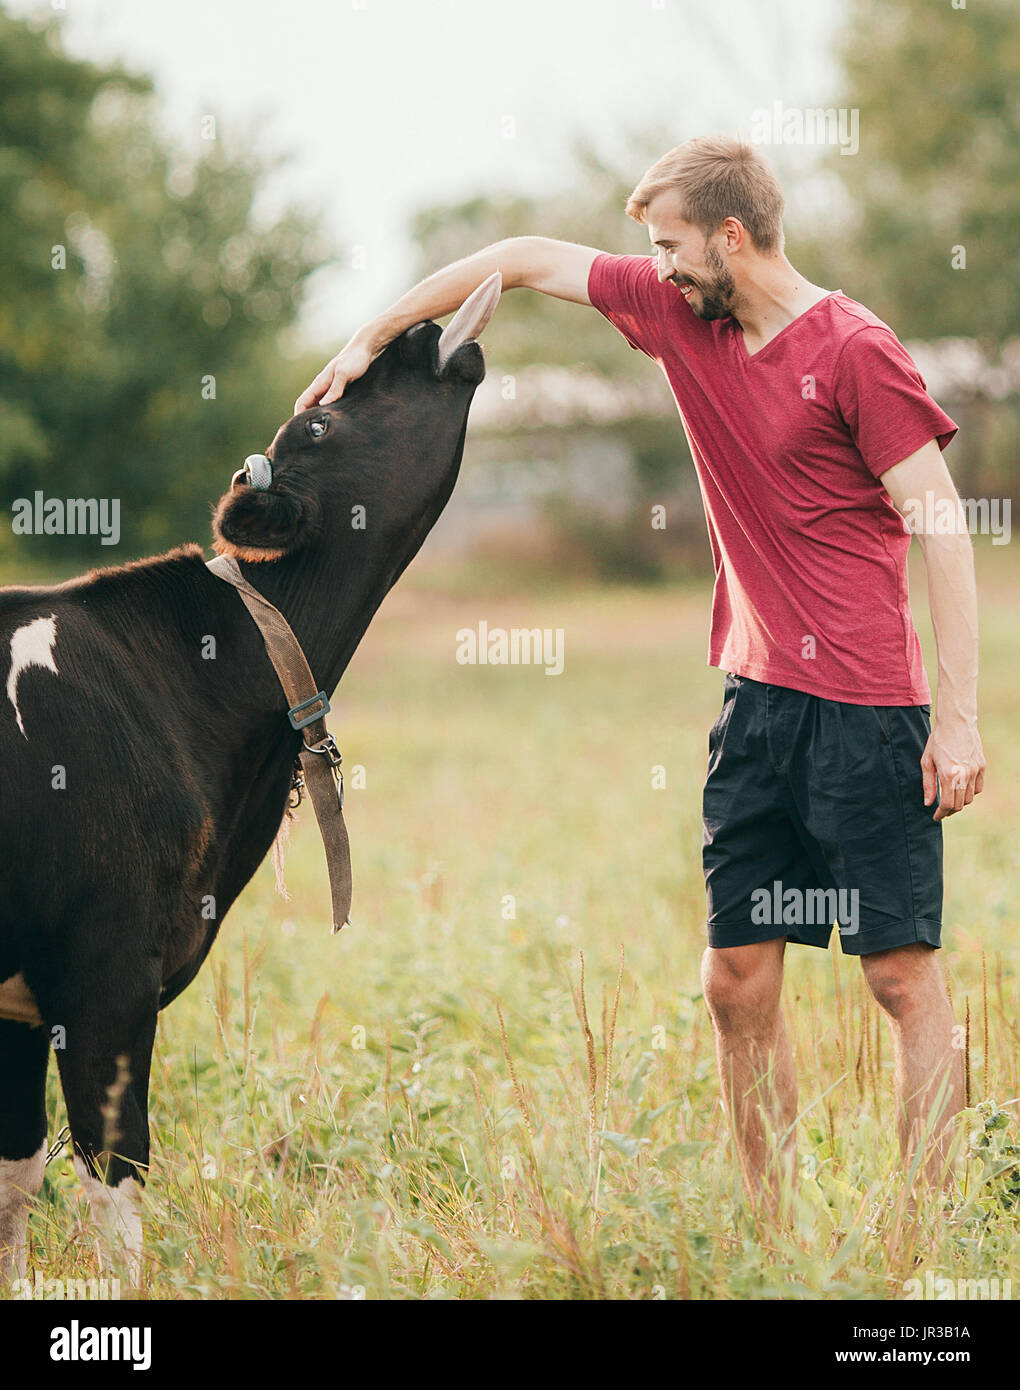 Sorridente giovane uomo gioca con la mucca nera sul prato. Egli accarezza la testa e la mucca lecca la sua mano. Foto Stock